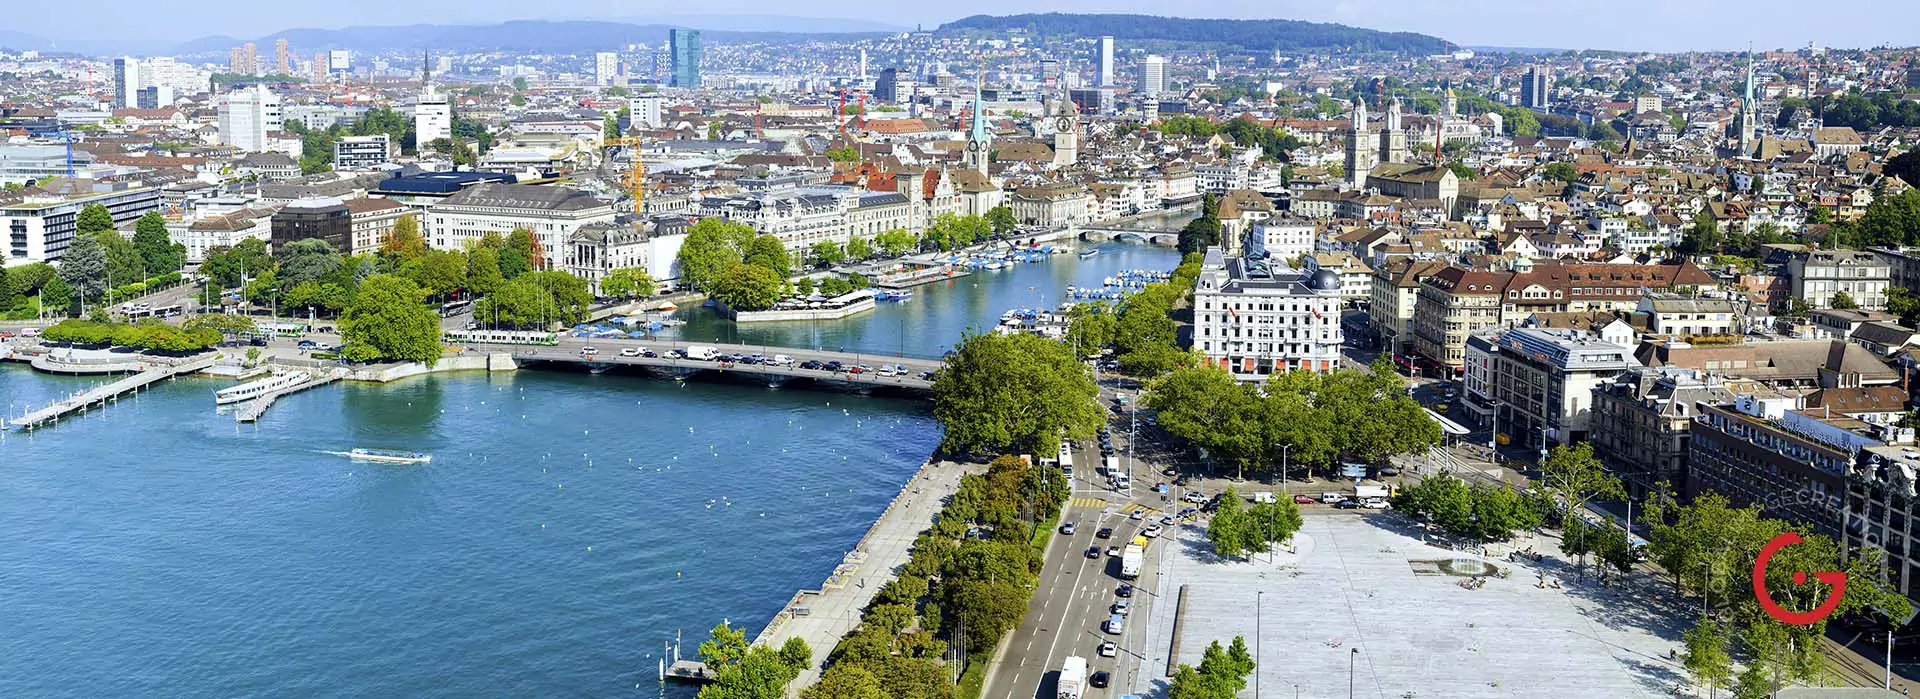 Zurich, Switzerland Aerial Photography - Travel Photographer and Switzerland Photography